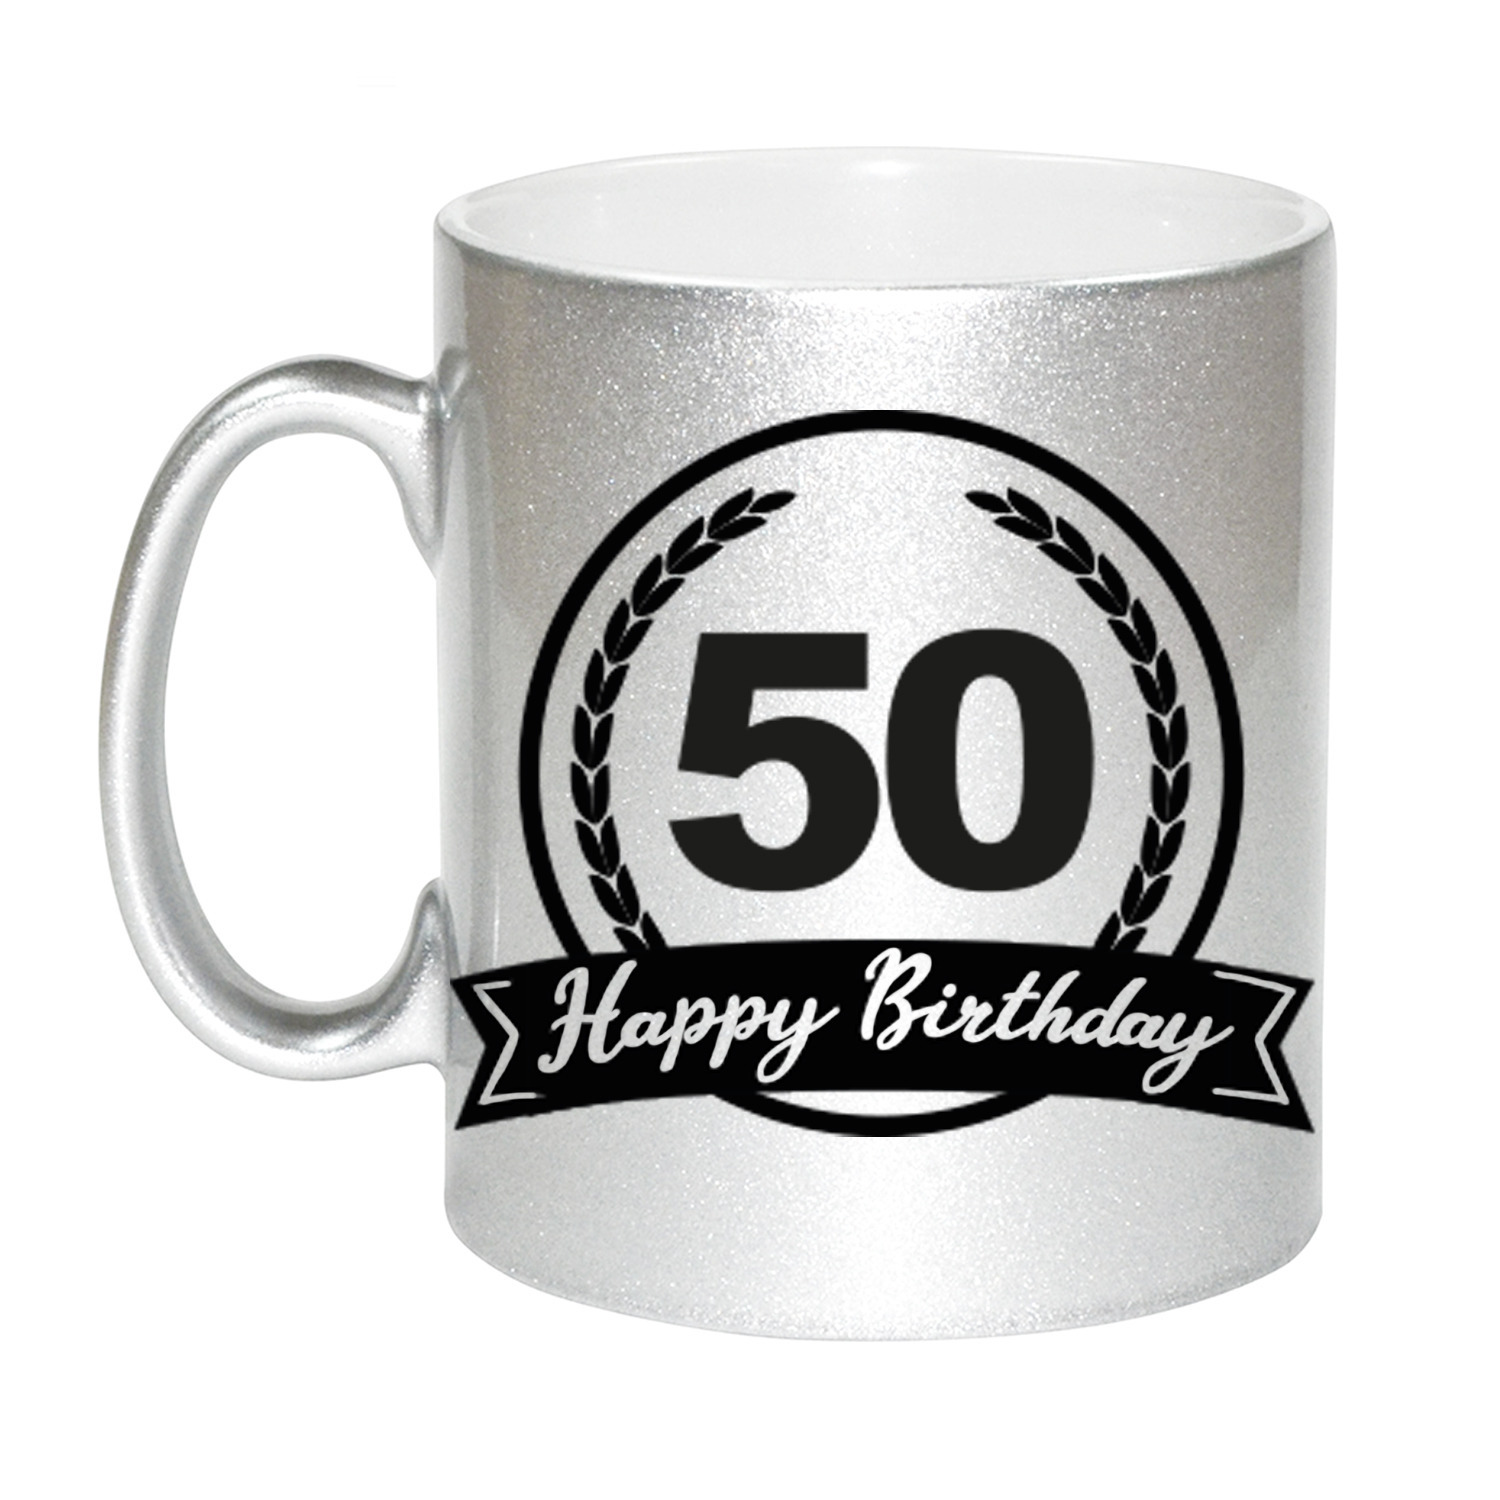 Happy Birthday 50 years zilveren cadeau mok-beker met wimpel 330 ml